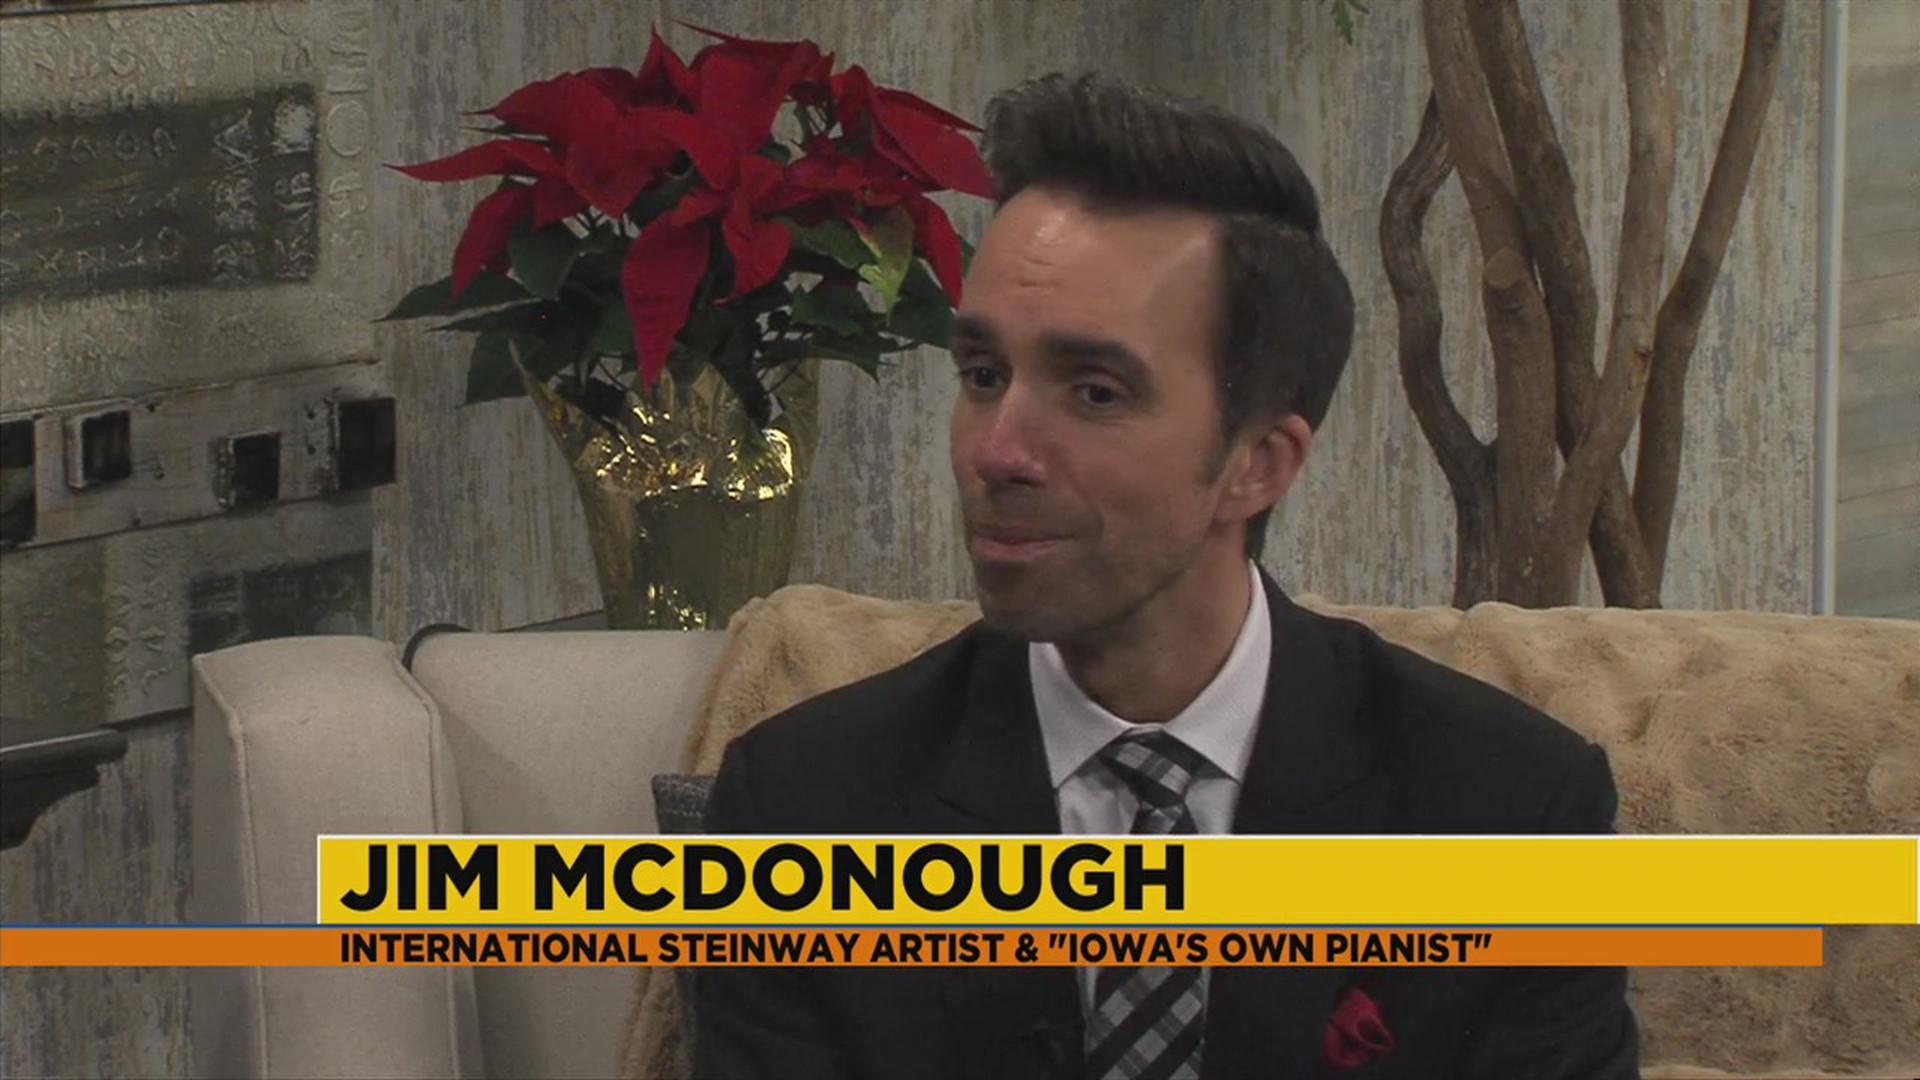 'Iowa's own pianist' Jim McDonough